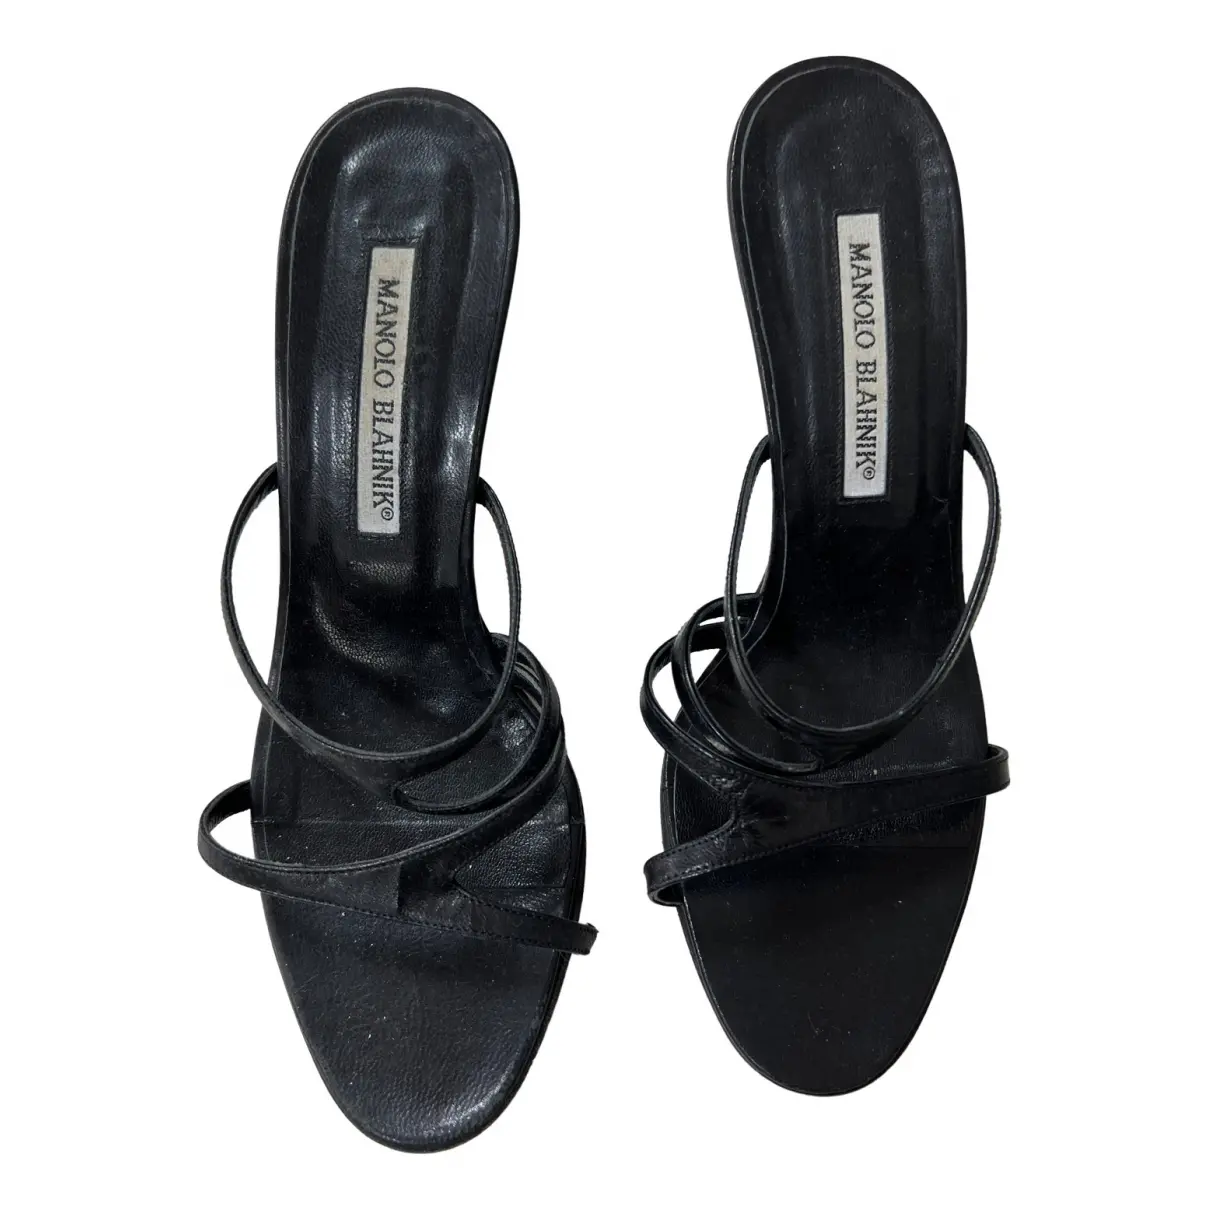 Leather sandals Manolo Blahnik - Vintage